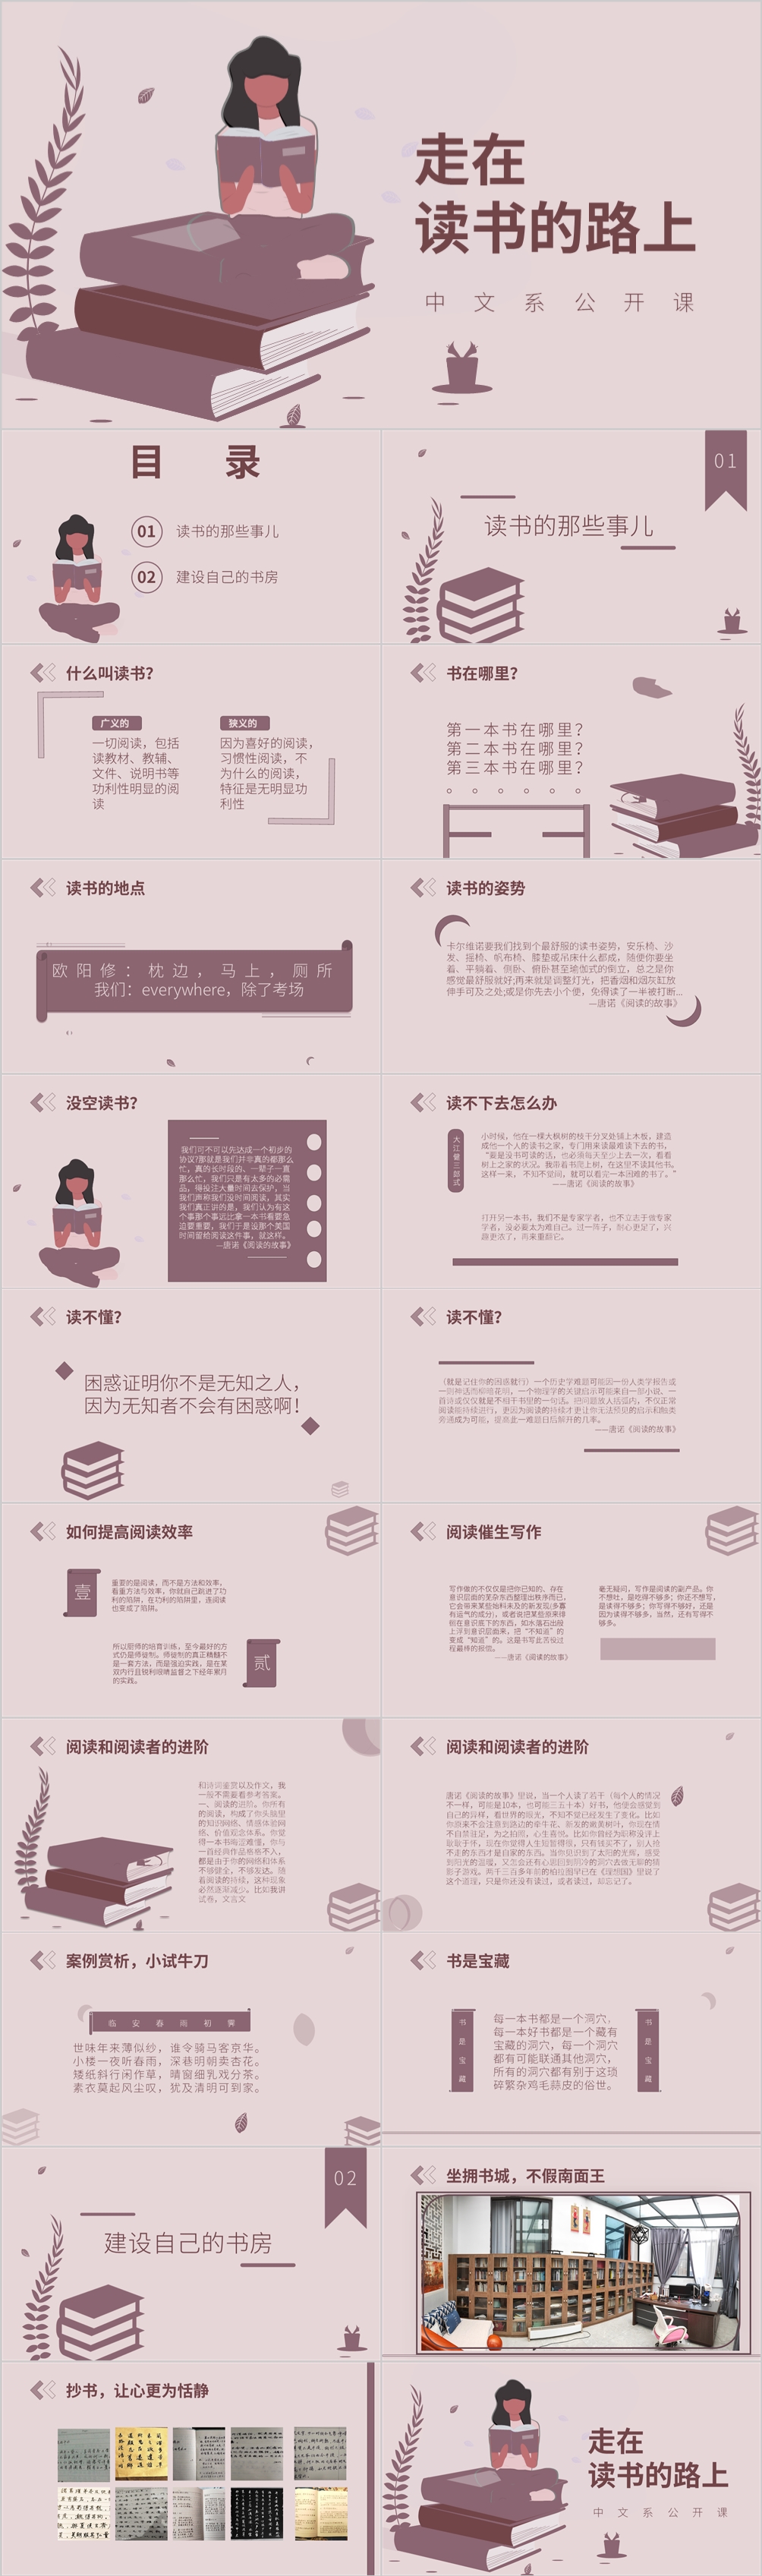 中文系公开课PPT模板阅读书房建设倡导阅读